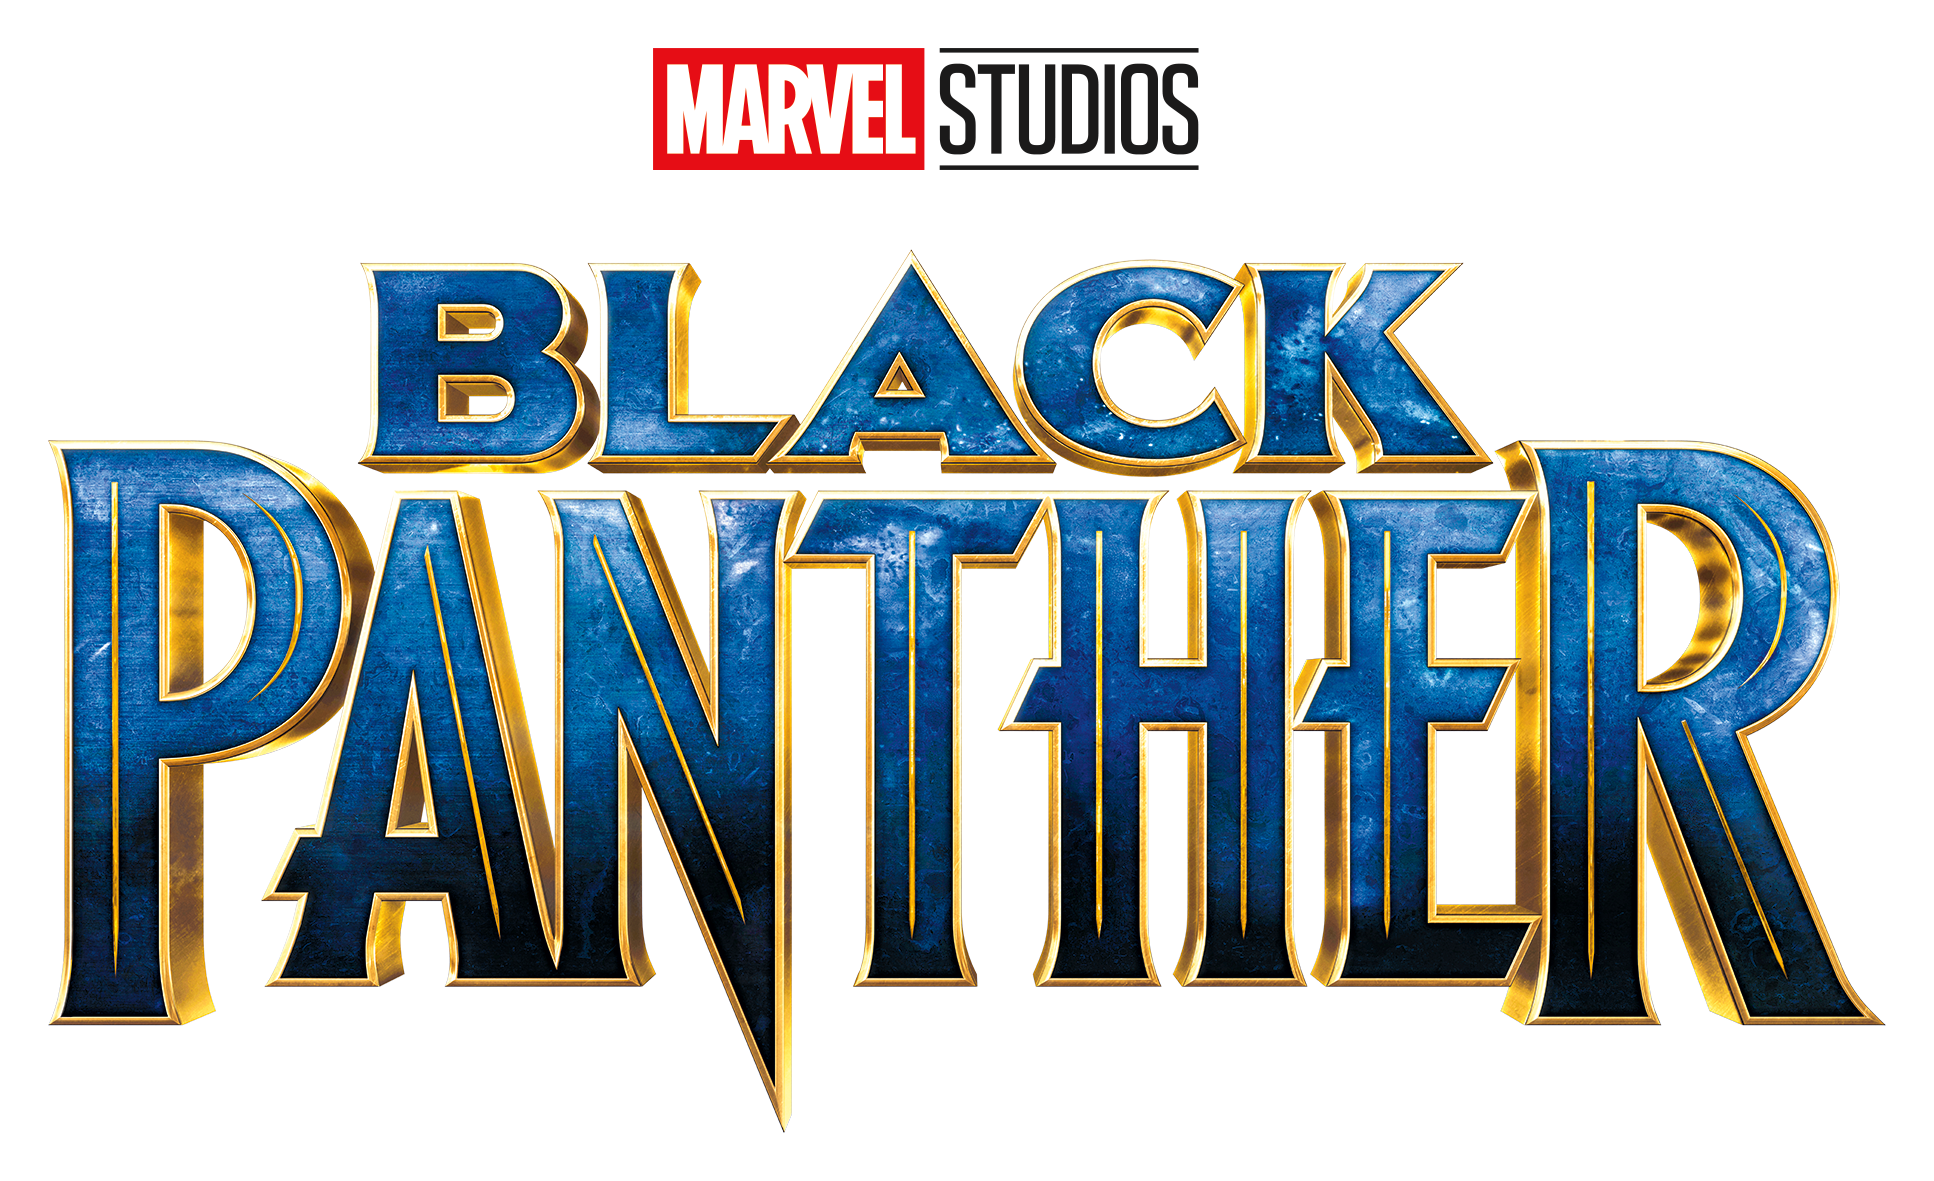 Marvel Black Panther Logo PNG Image Background